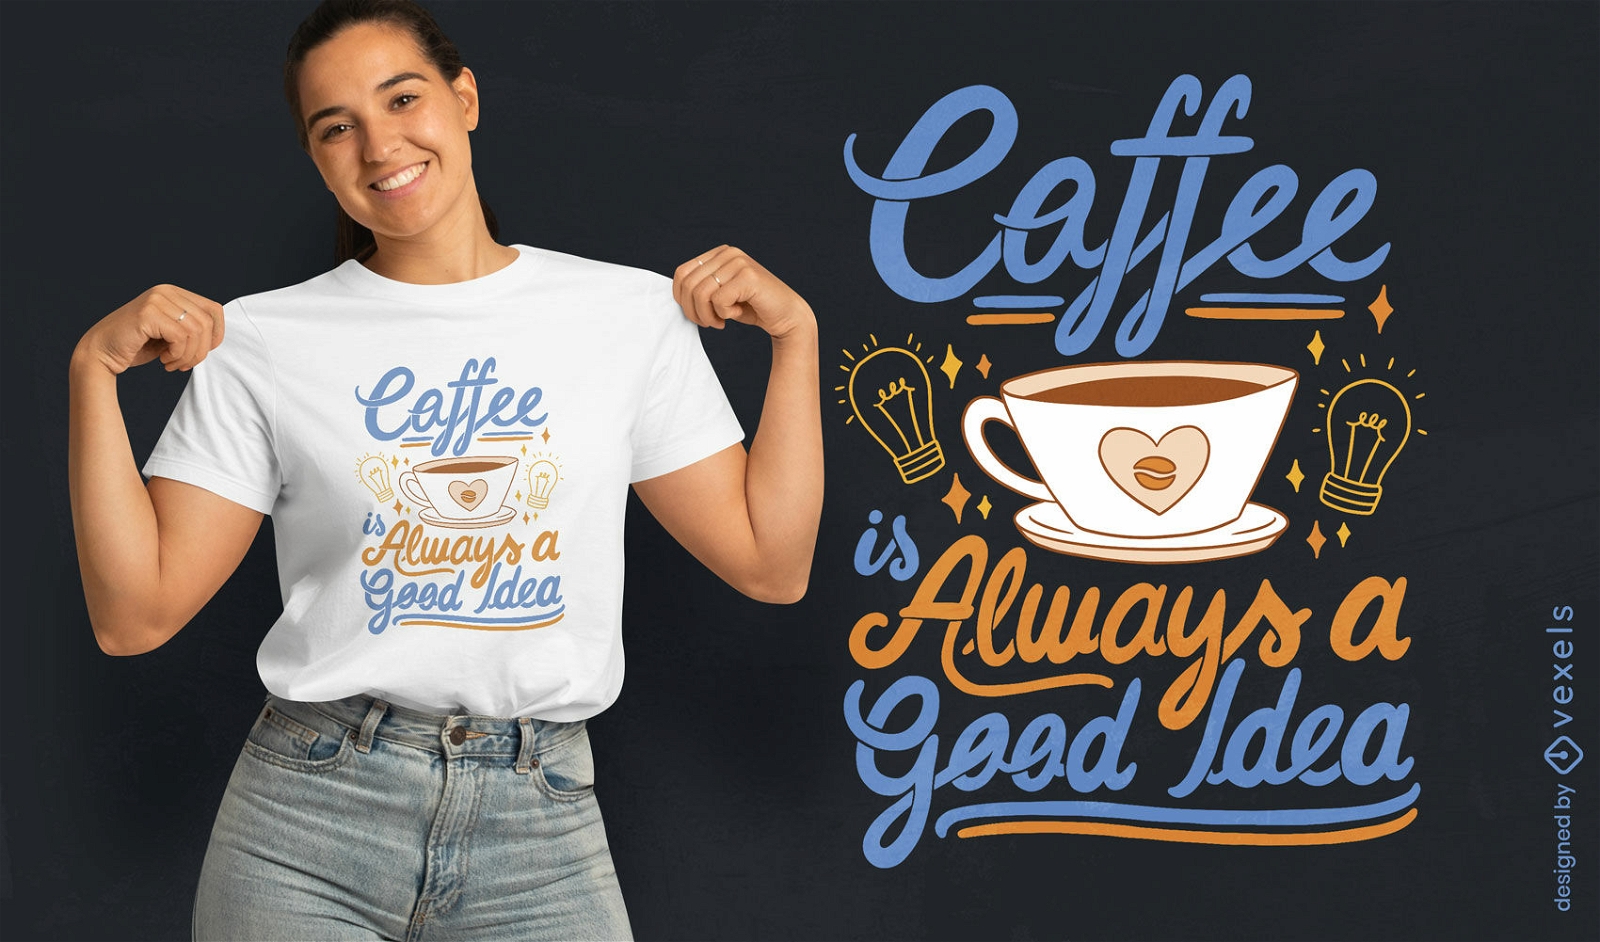 Dise?o de camiseta con cita de entusiasta del caf?.